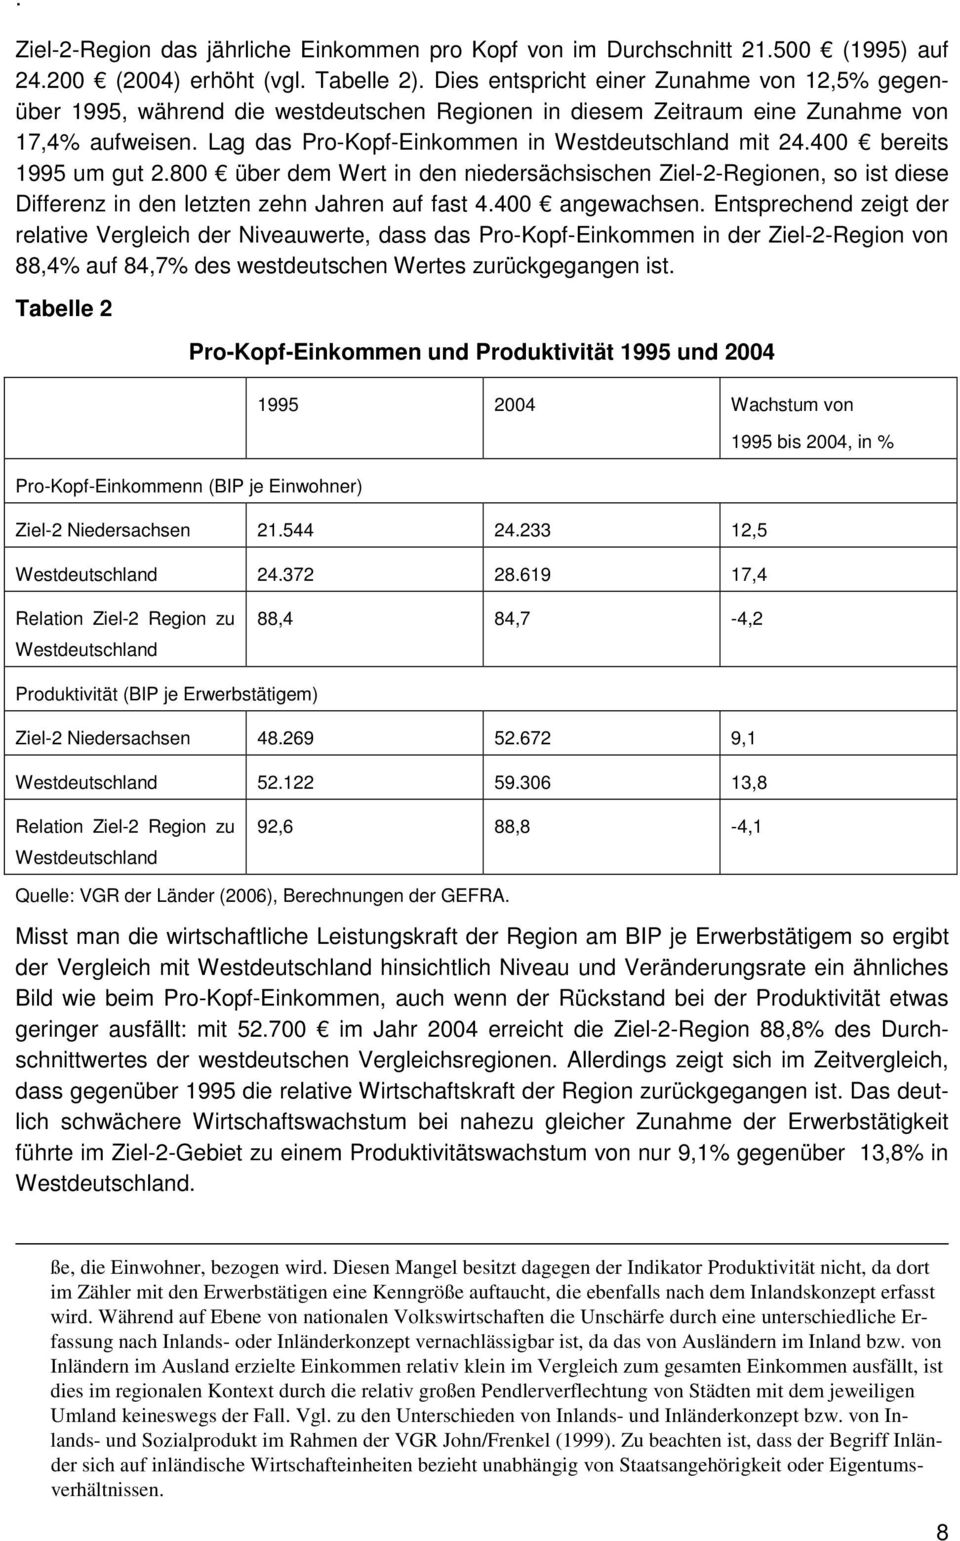 400 bereits 1995 um gut 2.800 über dem Wert in den niedersächsischen Ziel-2-Regionen, so ist diese Differenz in den letzten zehn Jahren auf fast 4.400 angewachsen.